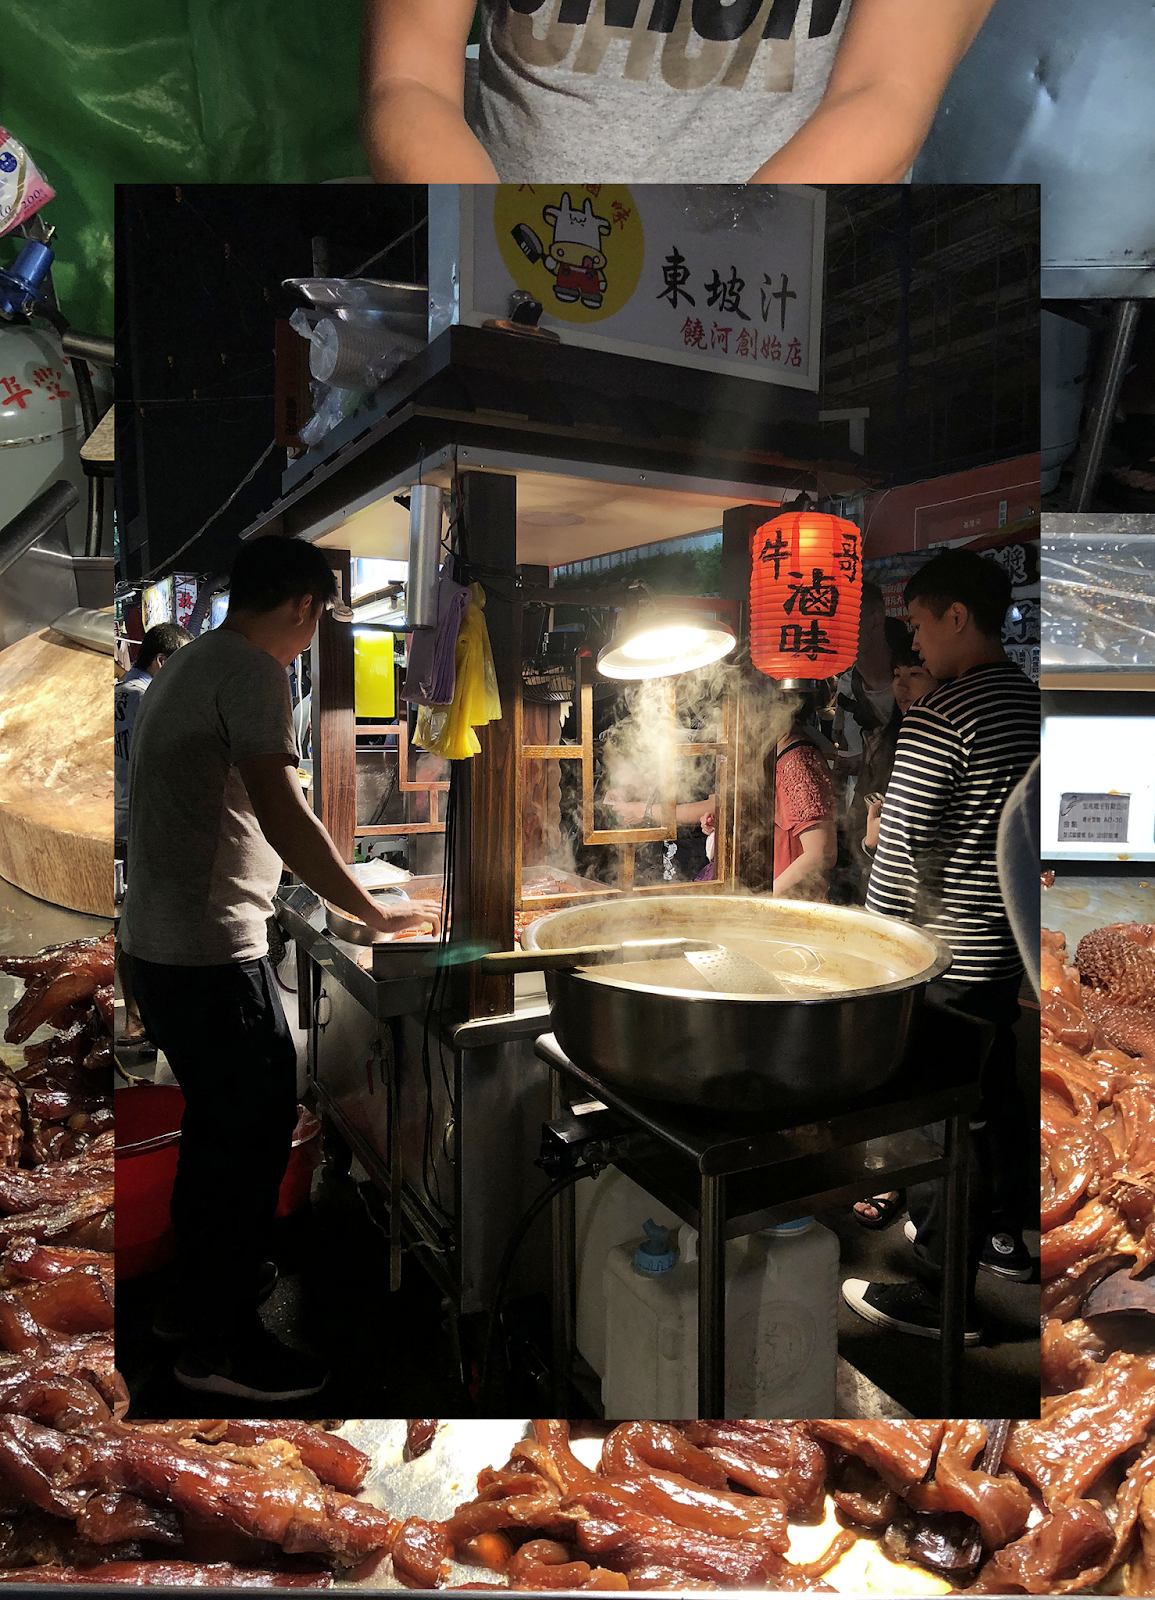 3 days in Taipei Taiwan, Taipei streets, things to do in Taipei, Shilin Night Market, Raohe Night Market, food in Taipei - Taipei, Taiwan / FOREVERVANNY